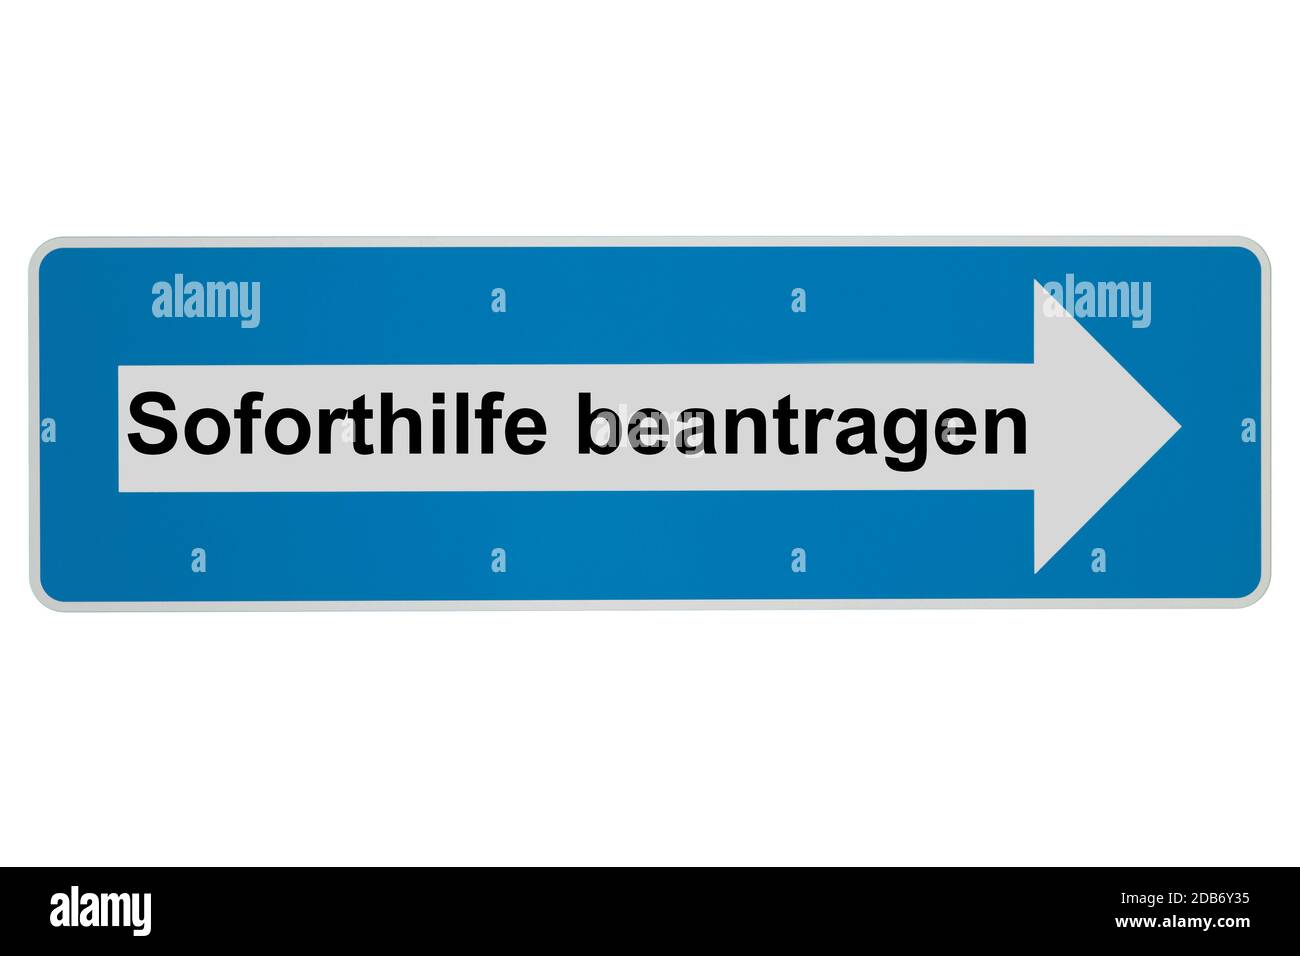 Concepto: Sofortilfe beantragen en alemán significa Seguridad Económica - Arrow Road signo sobre fondo blanco Foto de stock